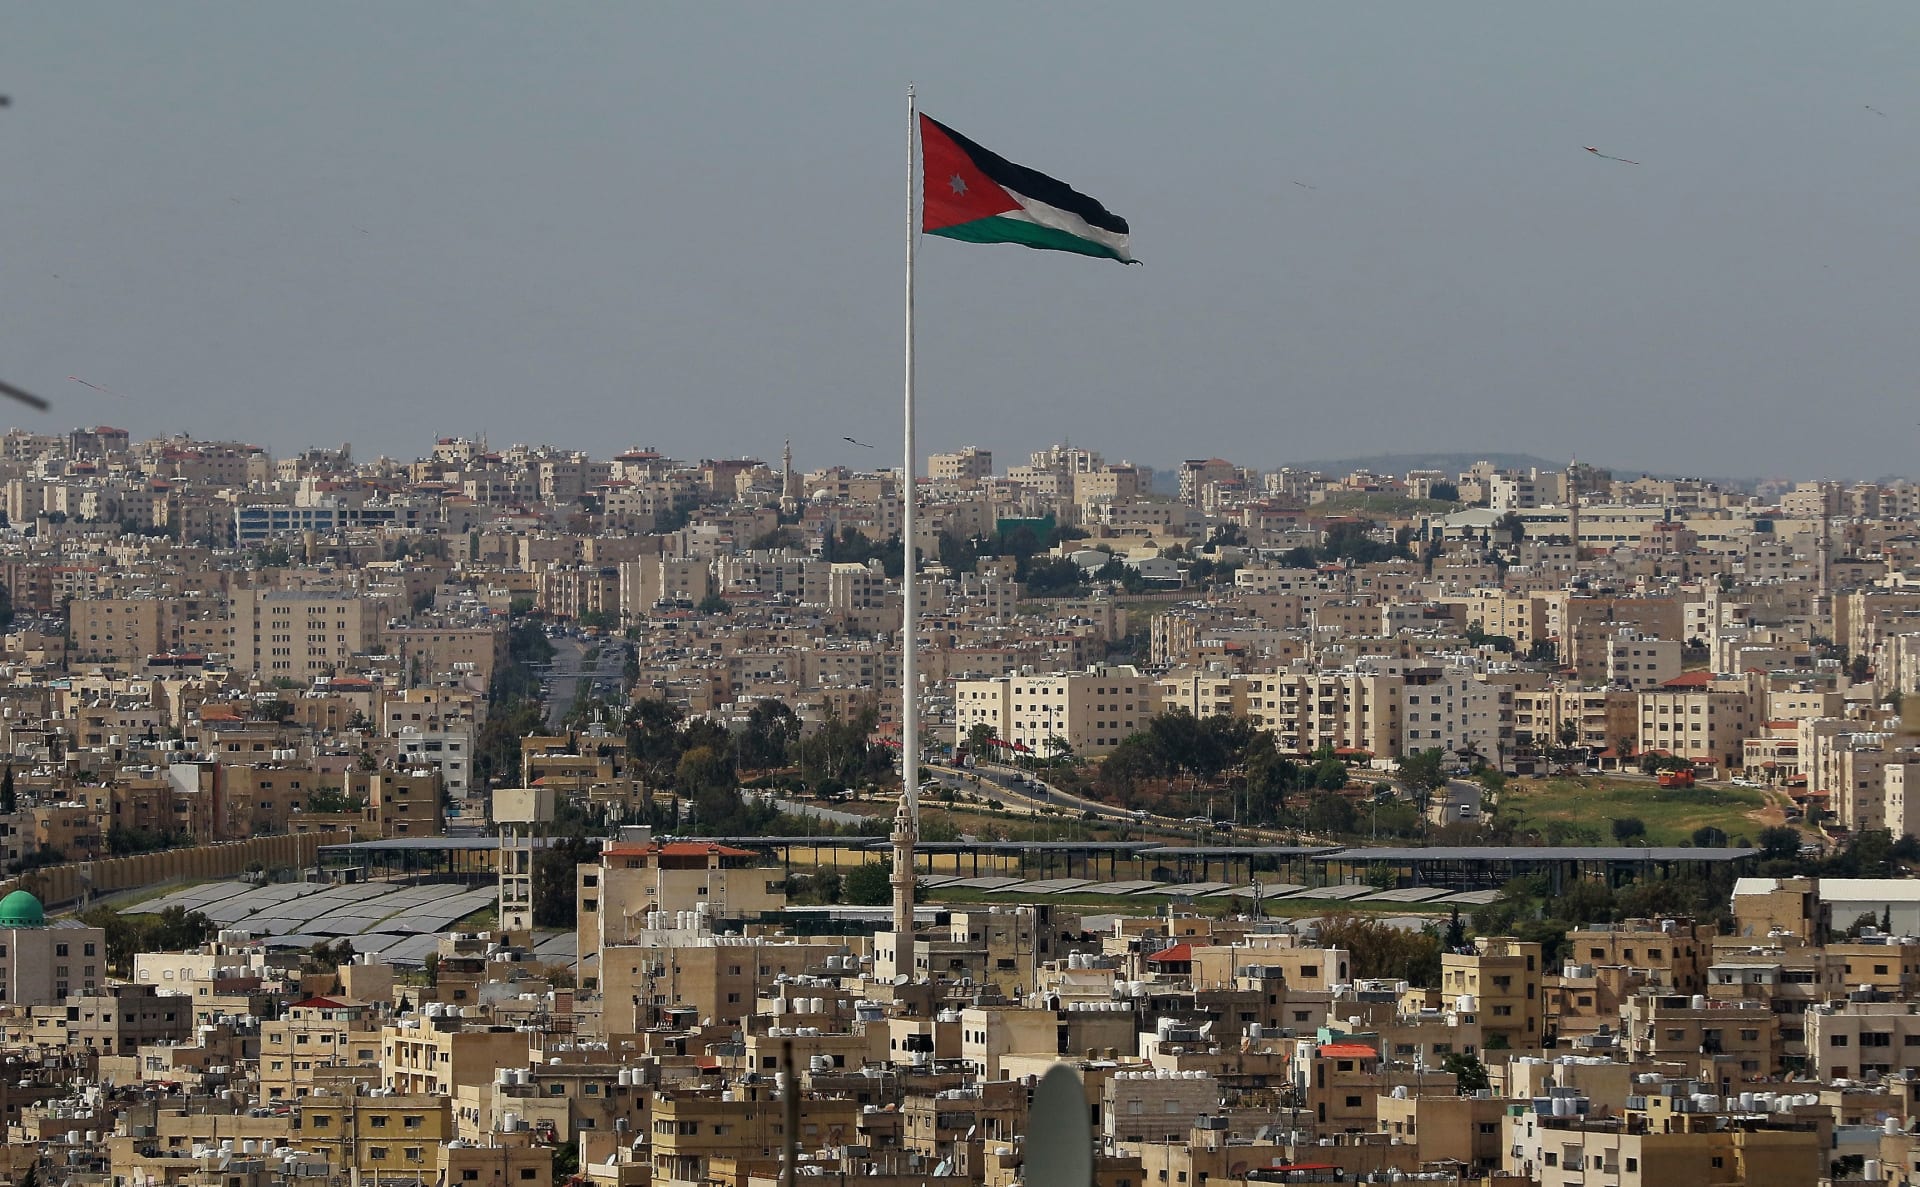 العاصمة الأردنية عمان